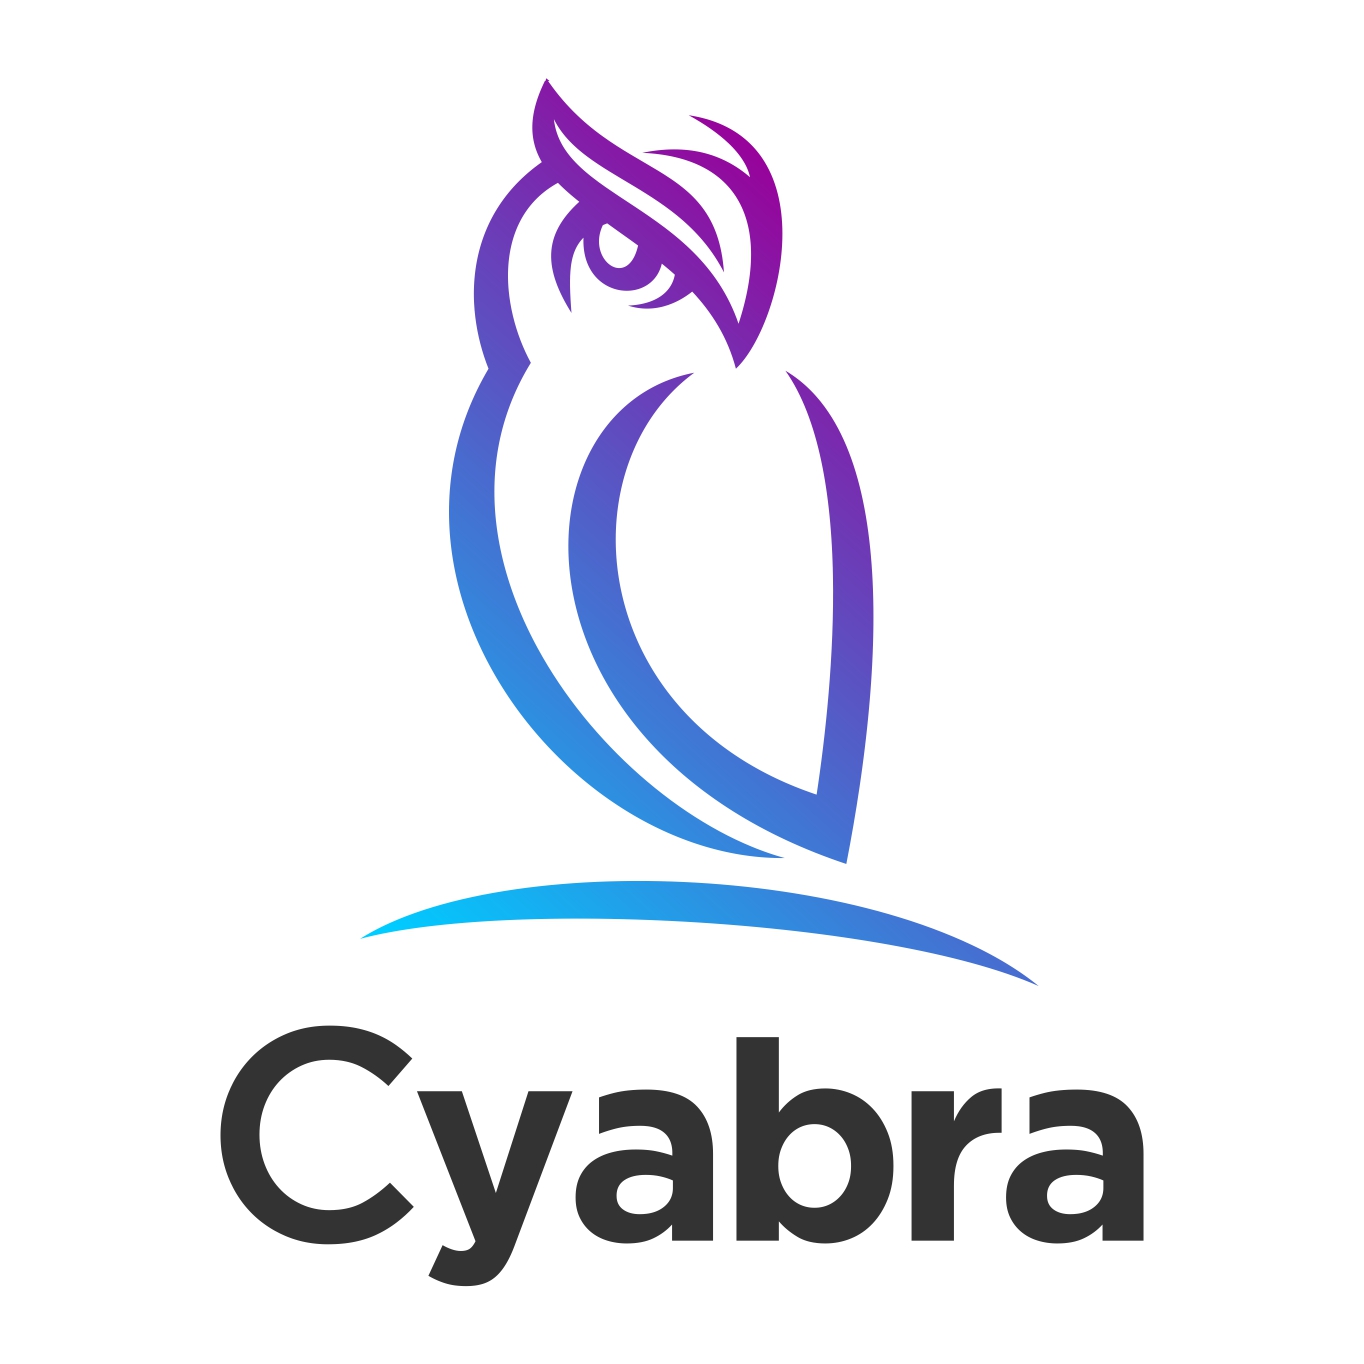 Cyabra logo